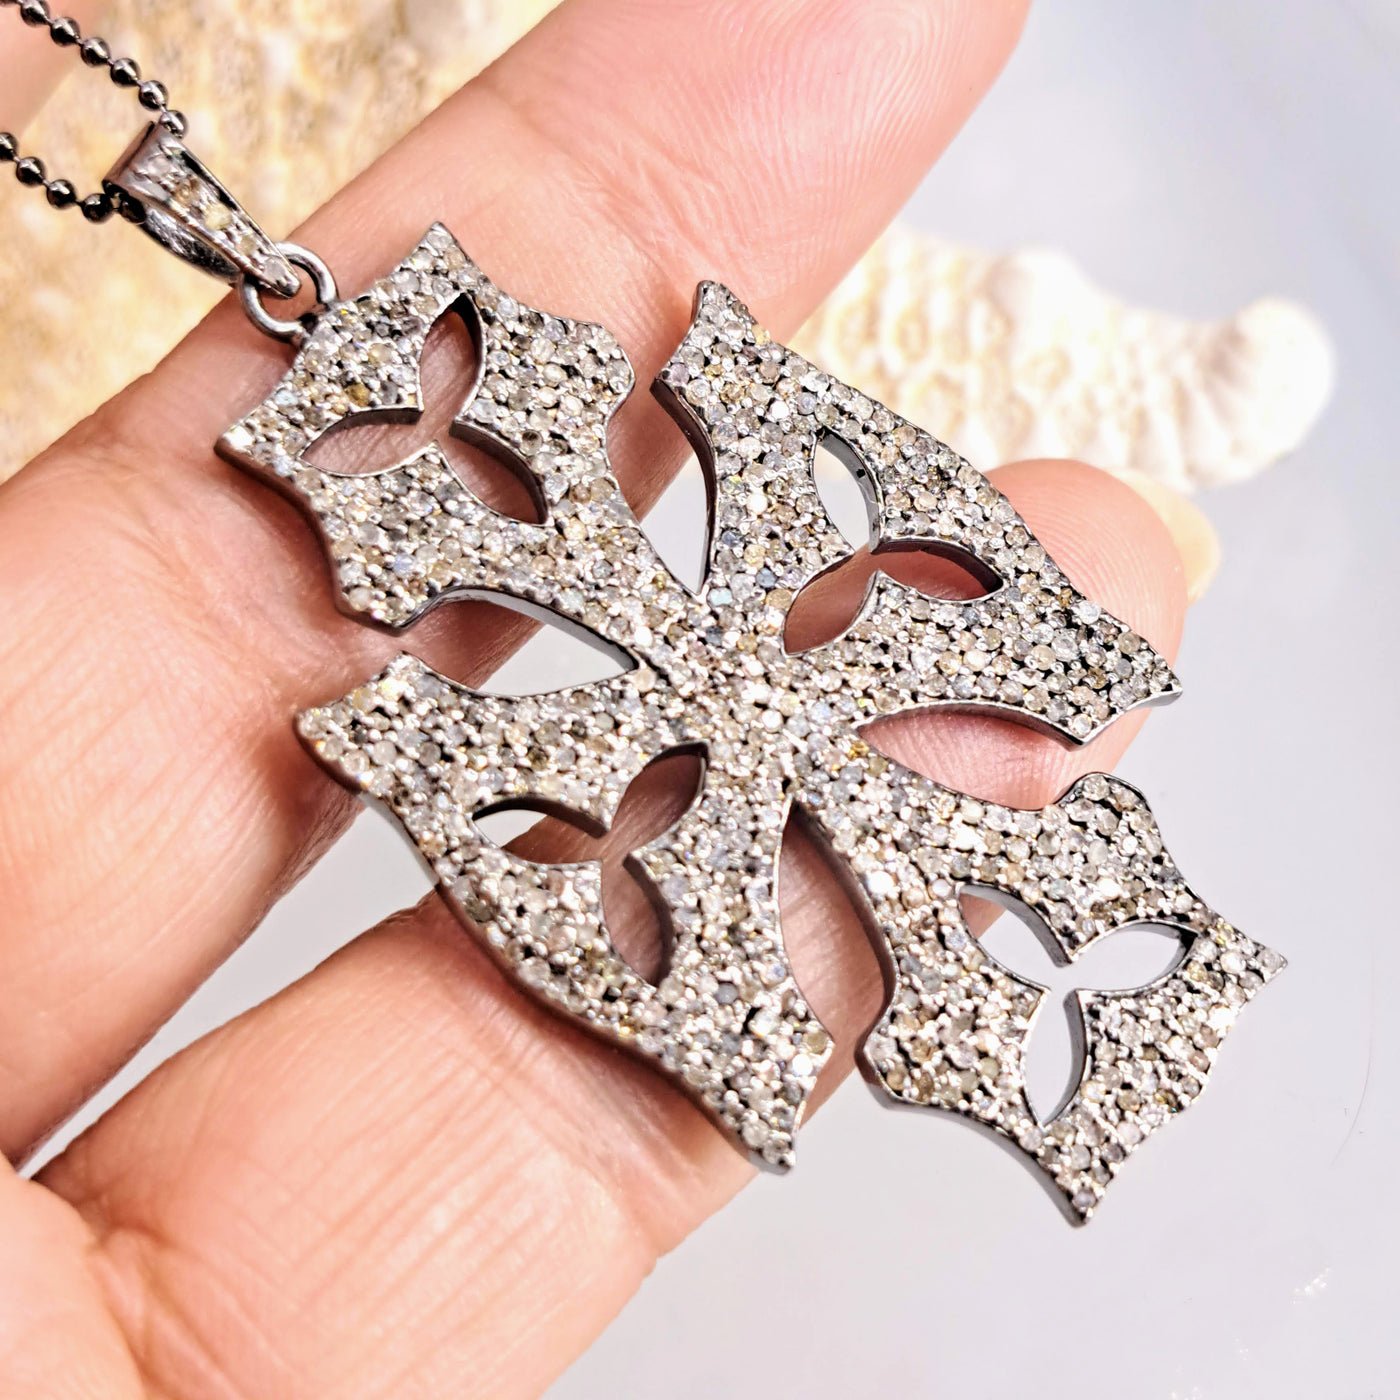 "Rock-God" 18" Necklace - Diamonds, Sterling